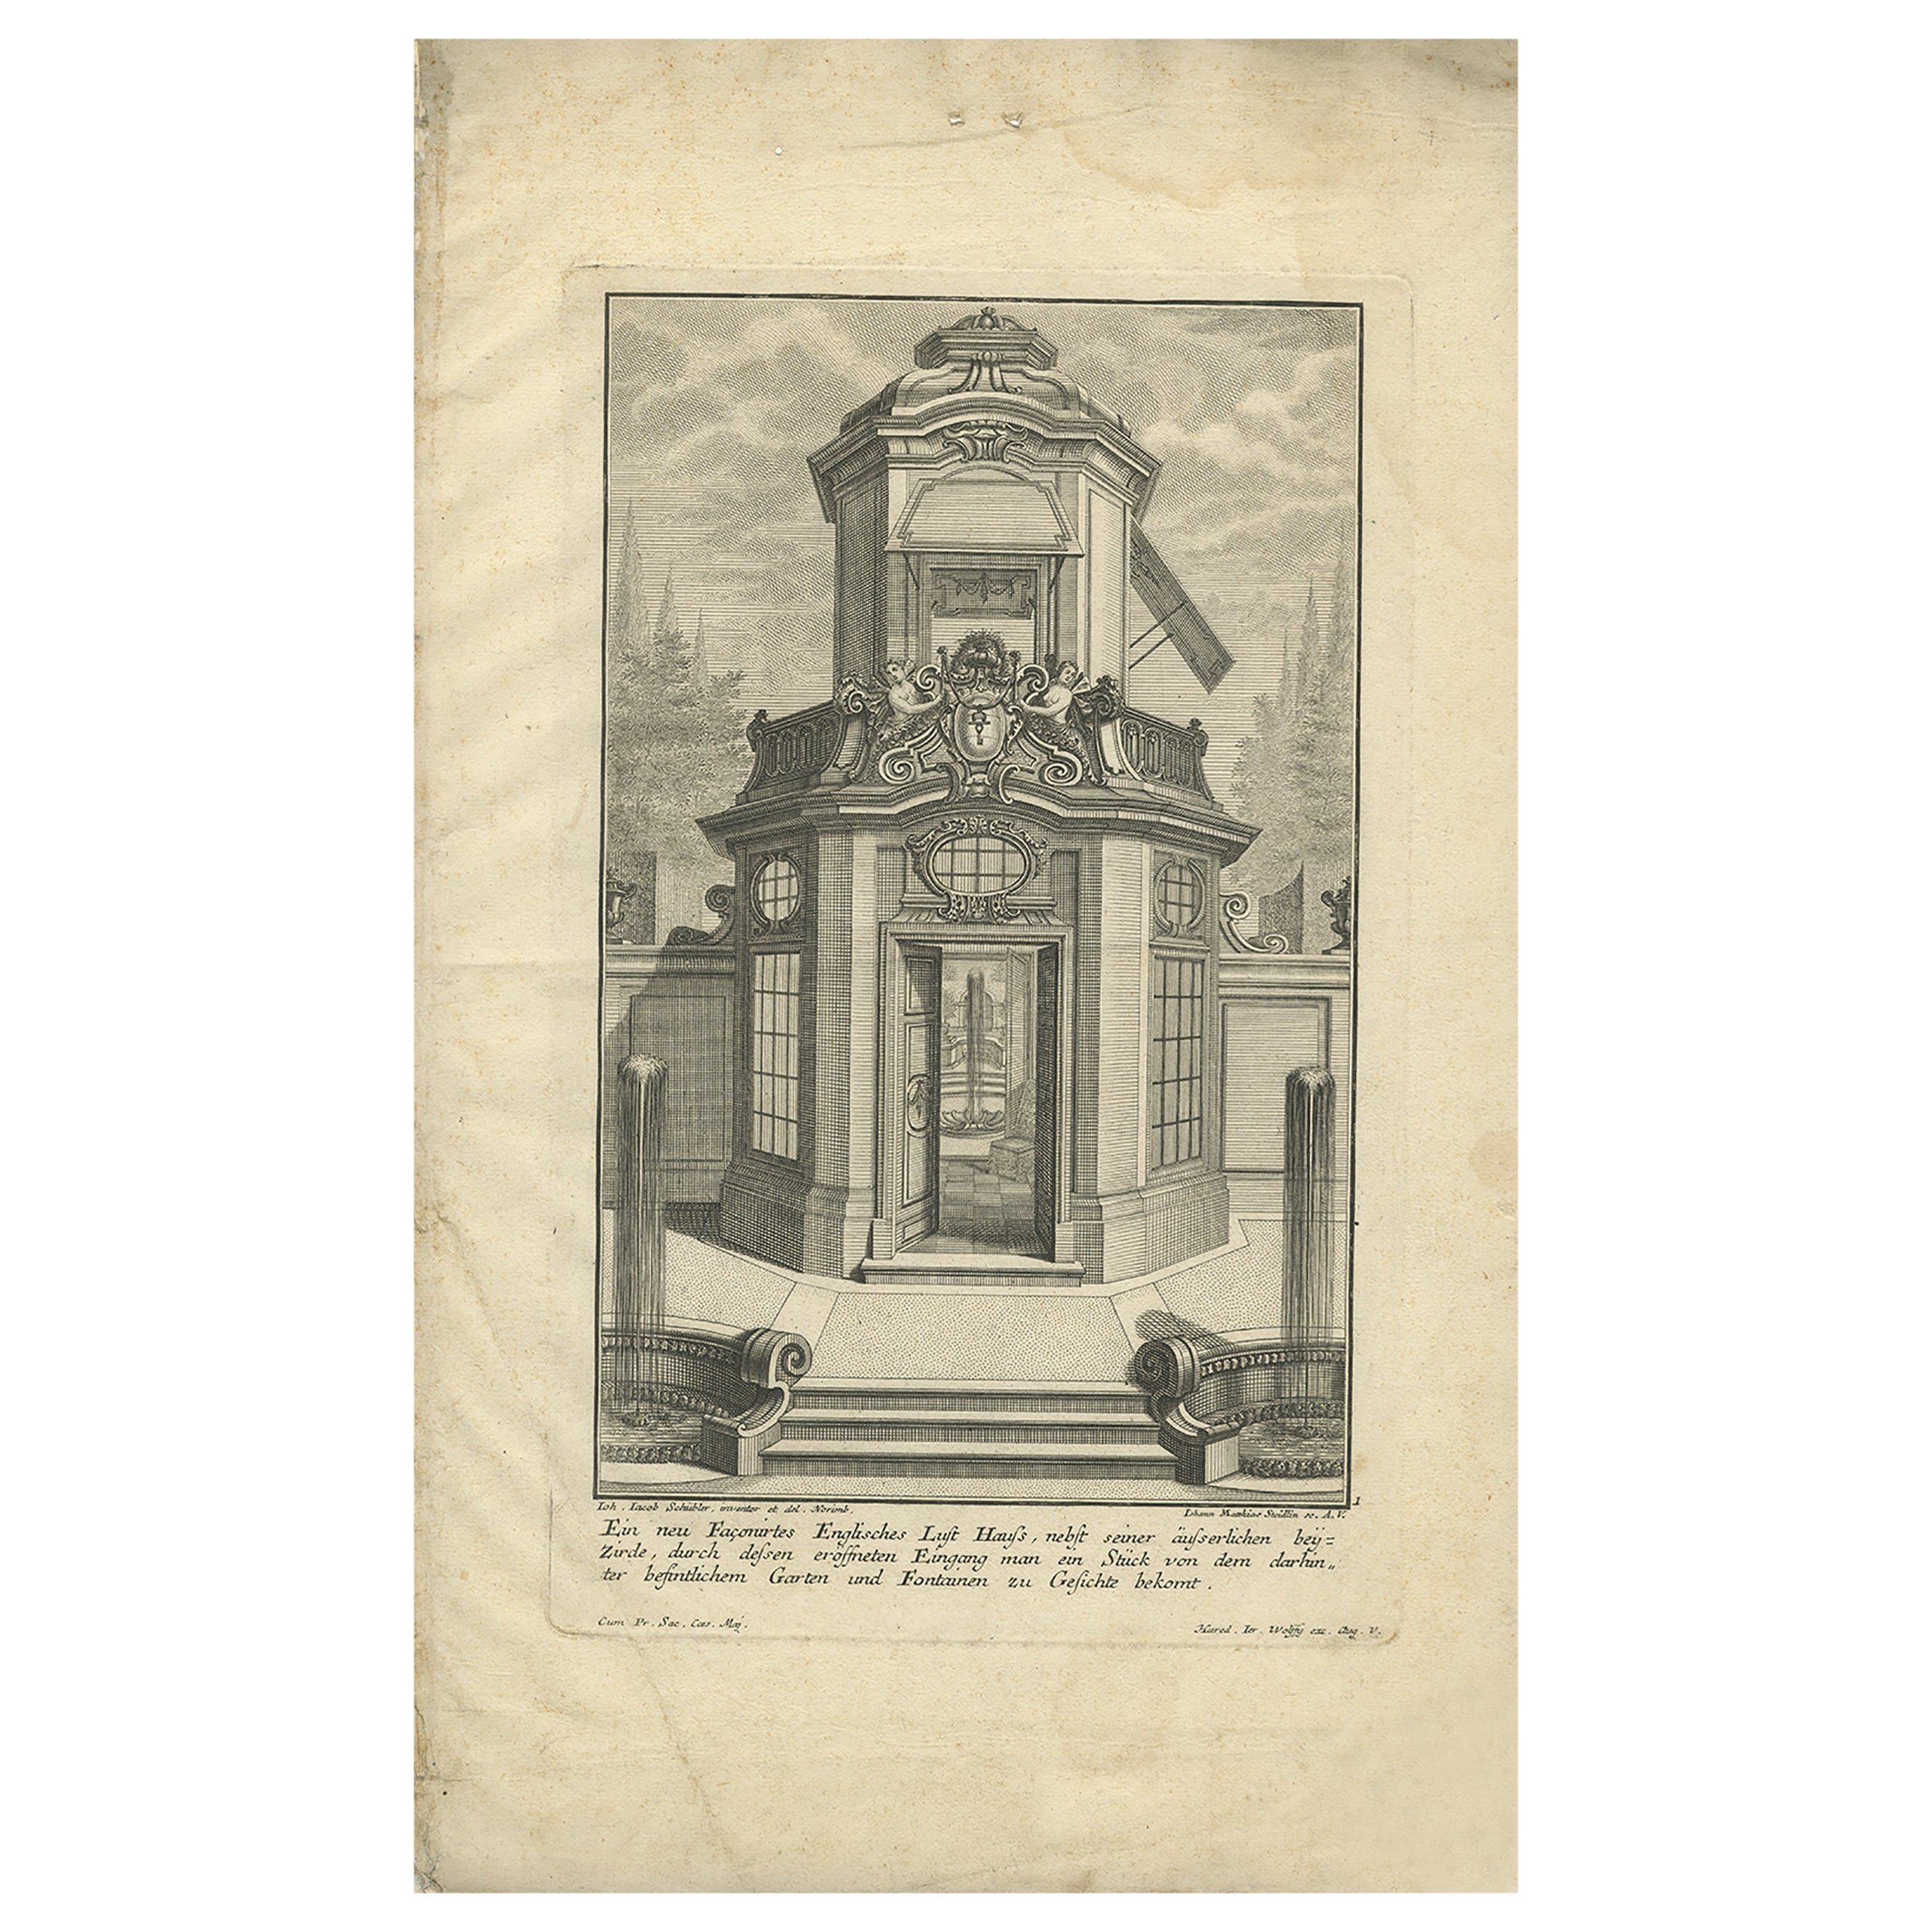 Pl. 1 Antique Print of an English Pavilion by Schübler, c.1724